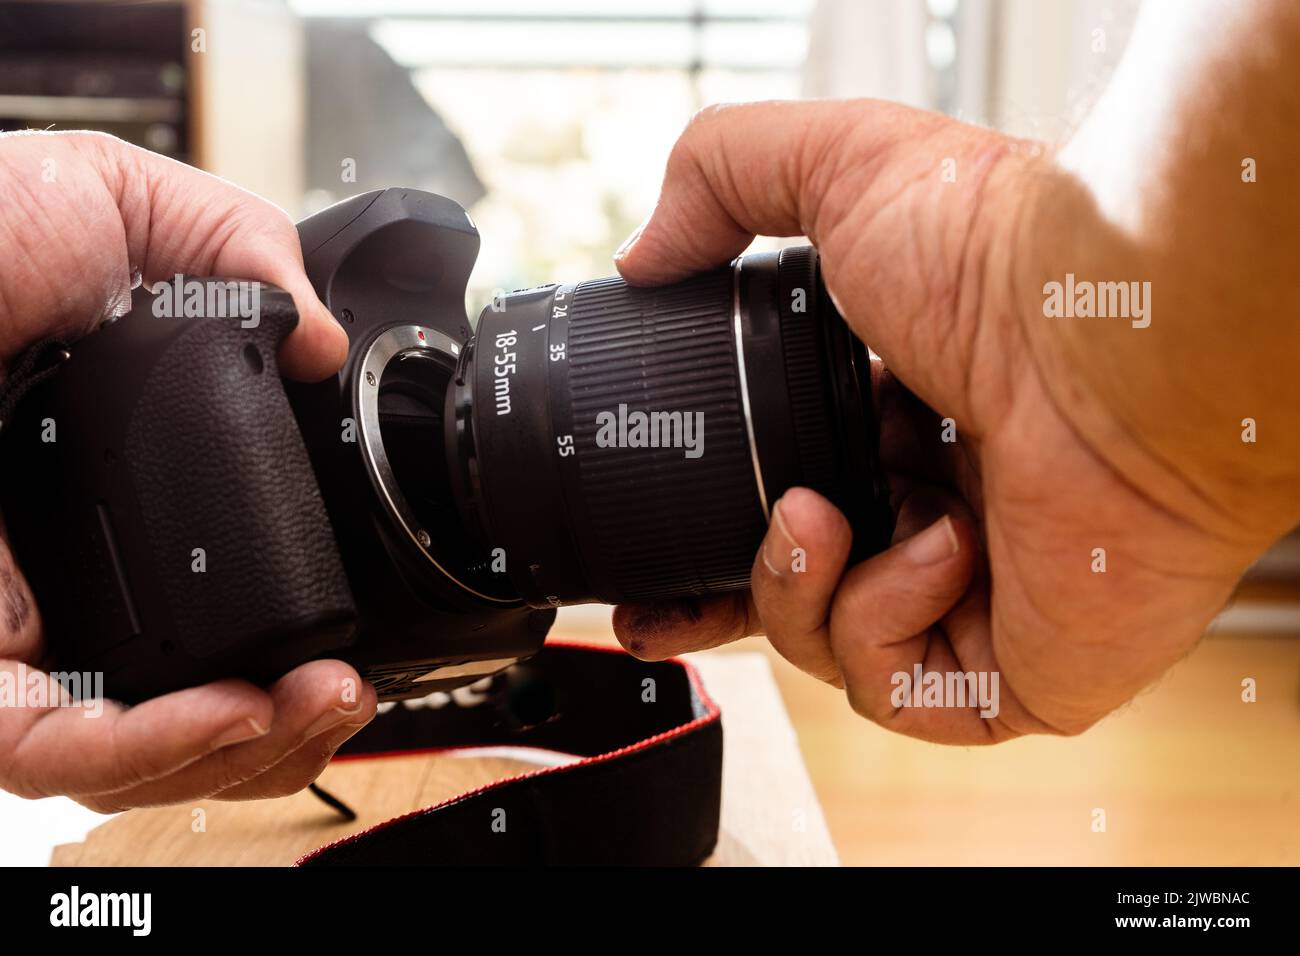 Fotografo maschile che posiziona un obiettivo standard su una fotocamera professionale. Foto Stock